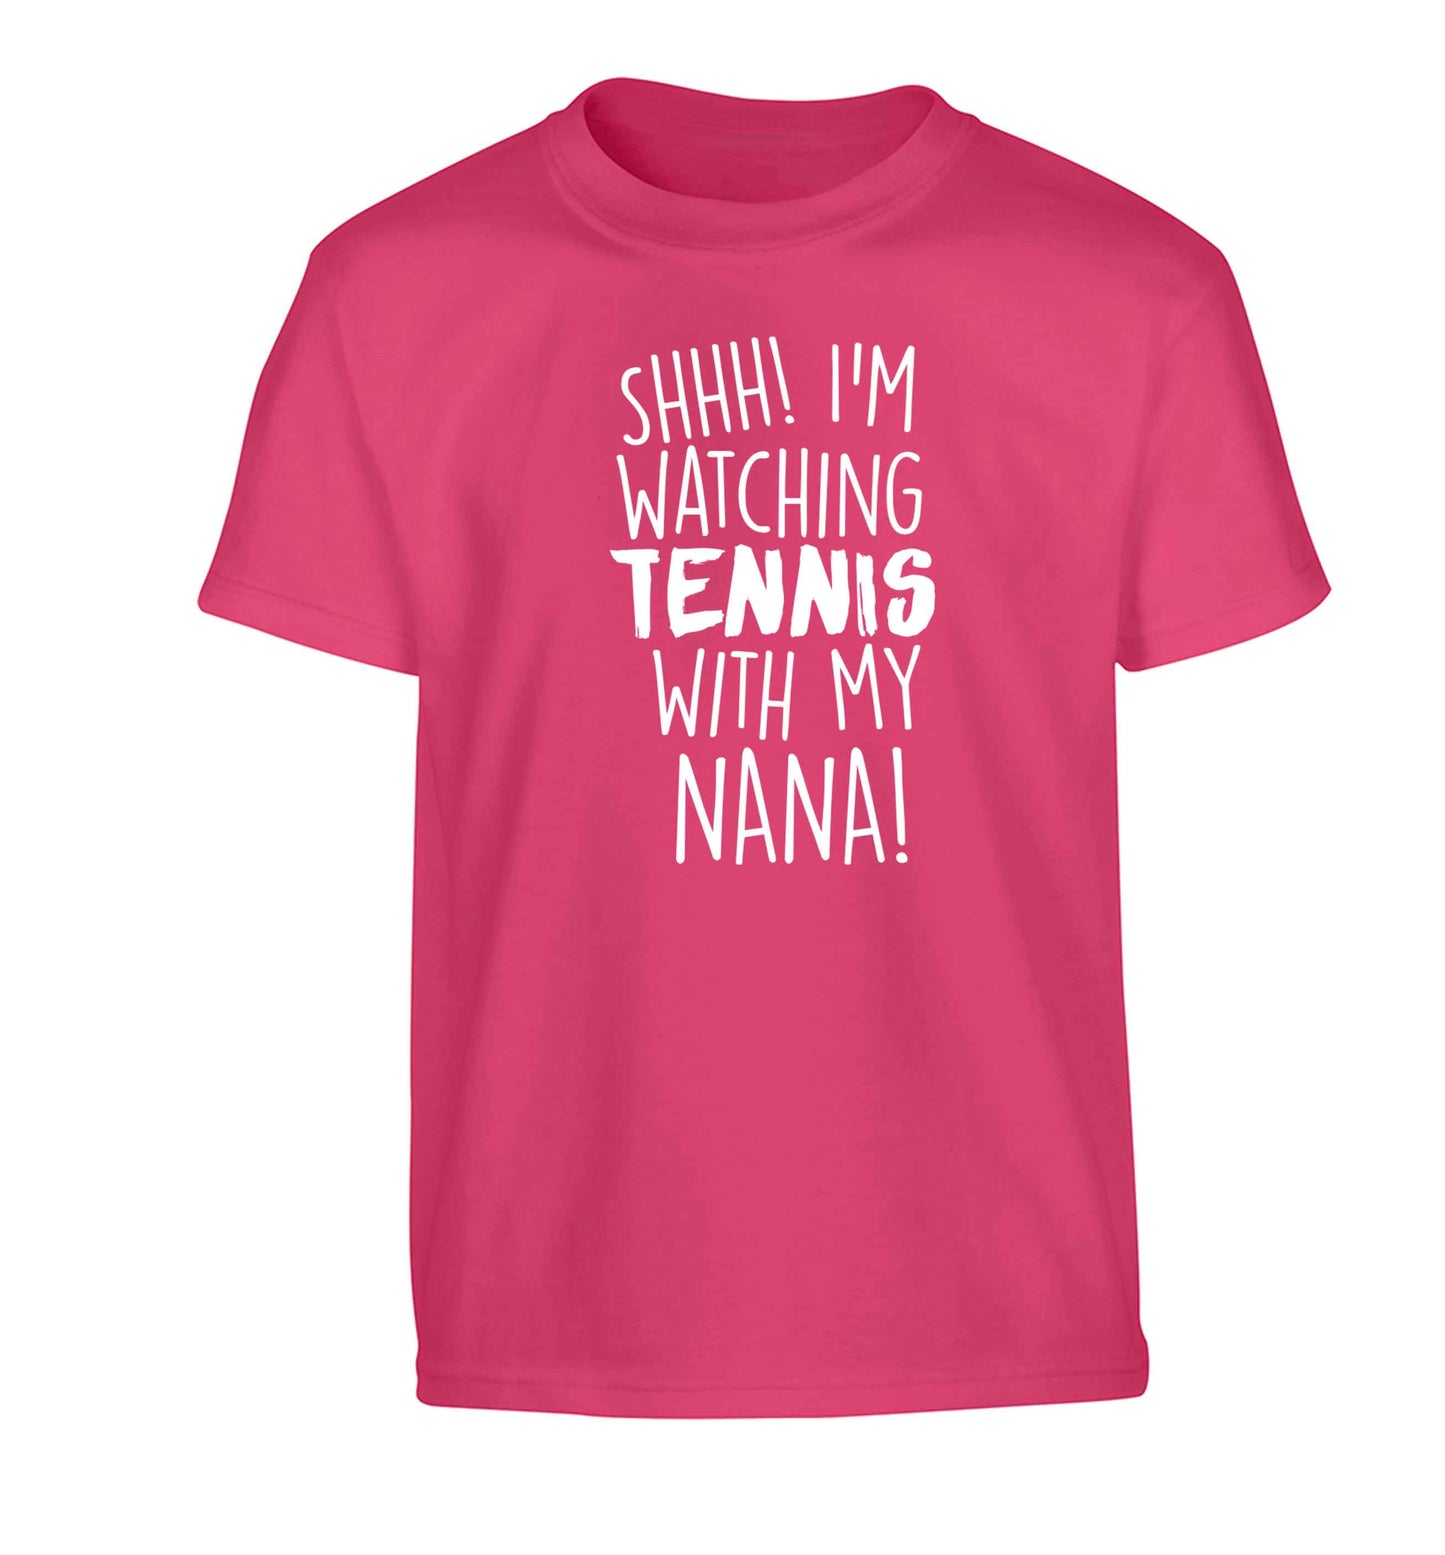 Shh! I'm watching tennis with my nana! Children's pink Tshirt 12-13 Years